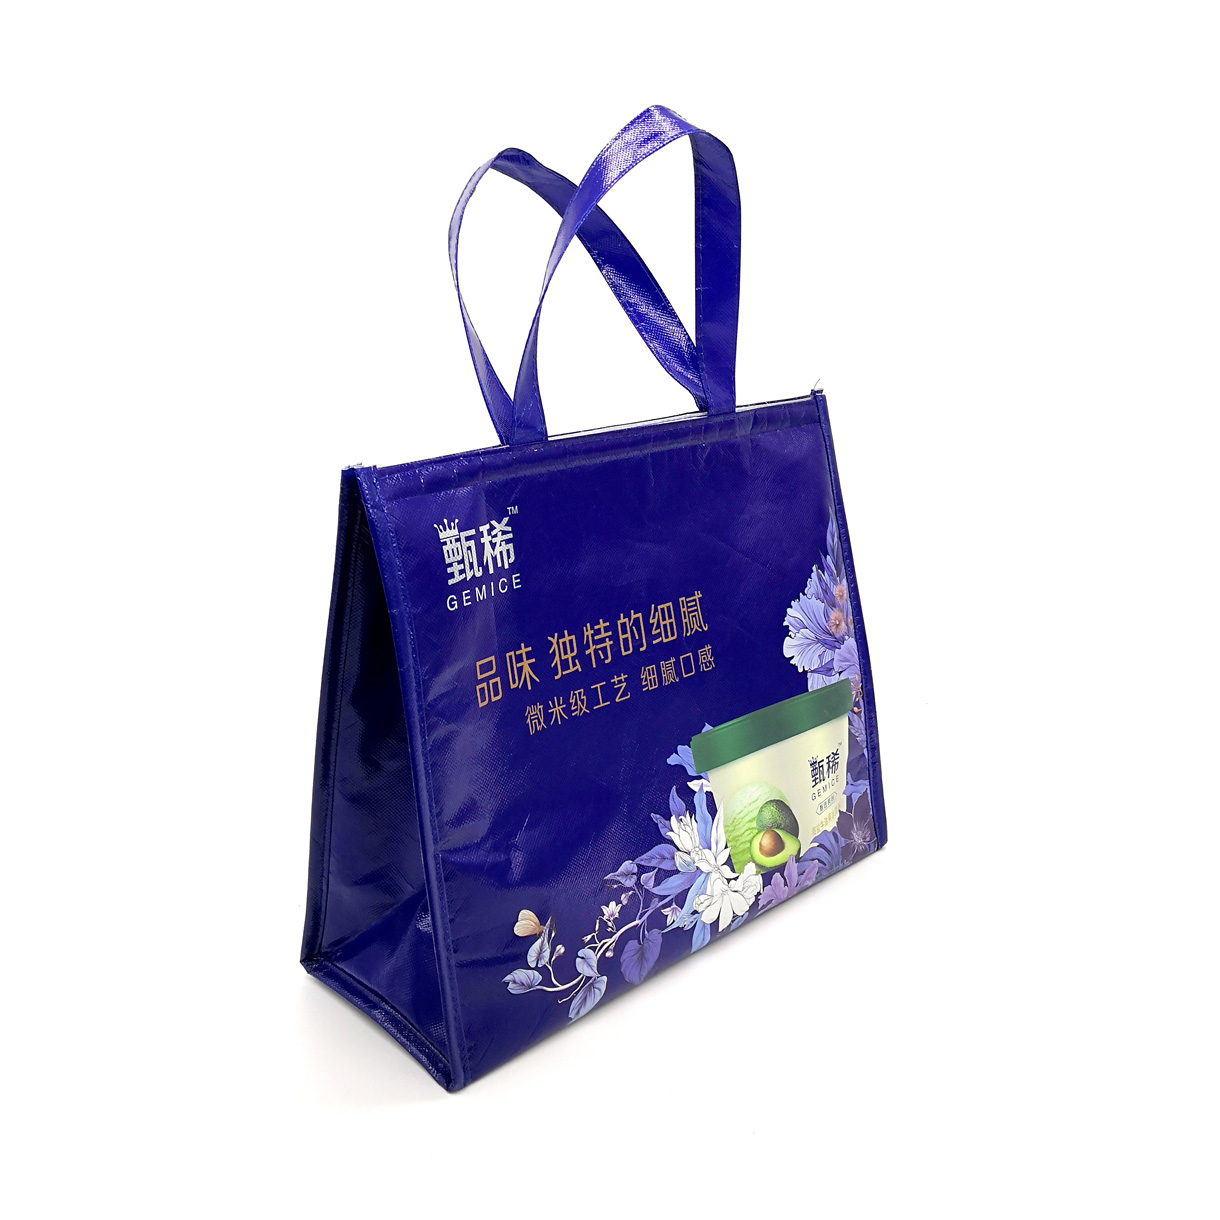 温州汇泰箱包有限公司-中国上海国际包装展展览会